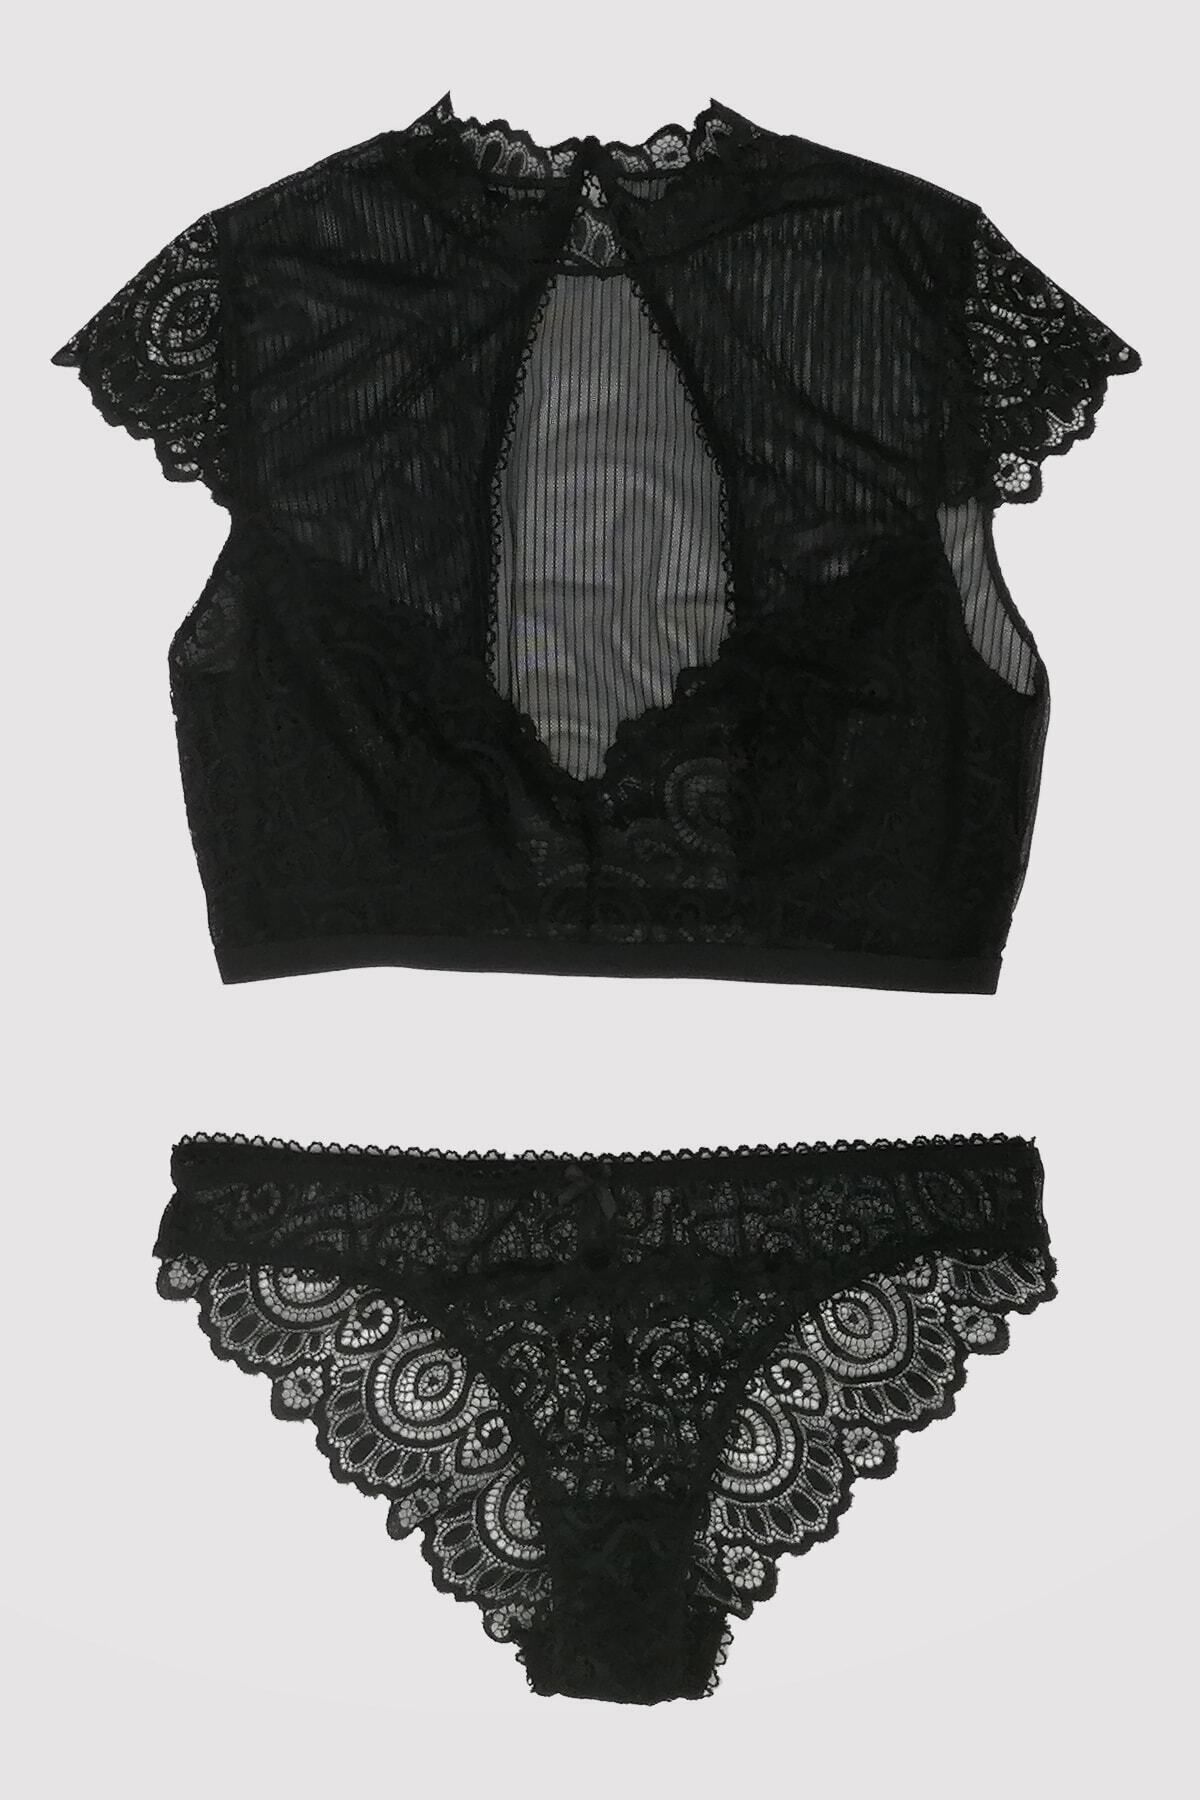 Pierre Cardin Kadın Siyah 4743 Kapsız Dantelli Transparan Büstiyer Takım / Iç Giyim Takımı